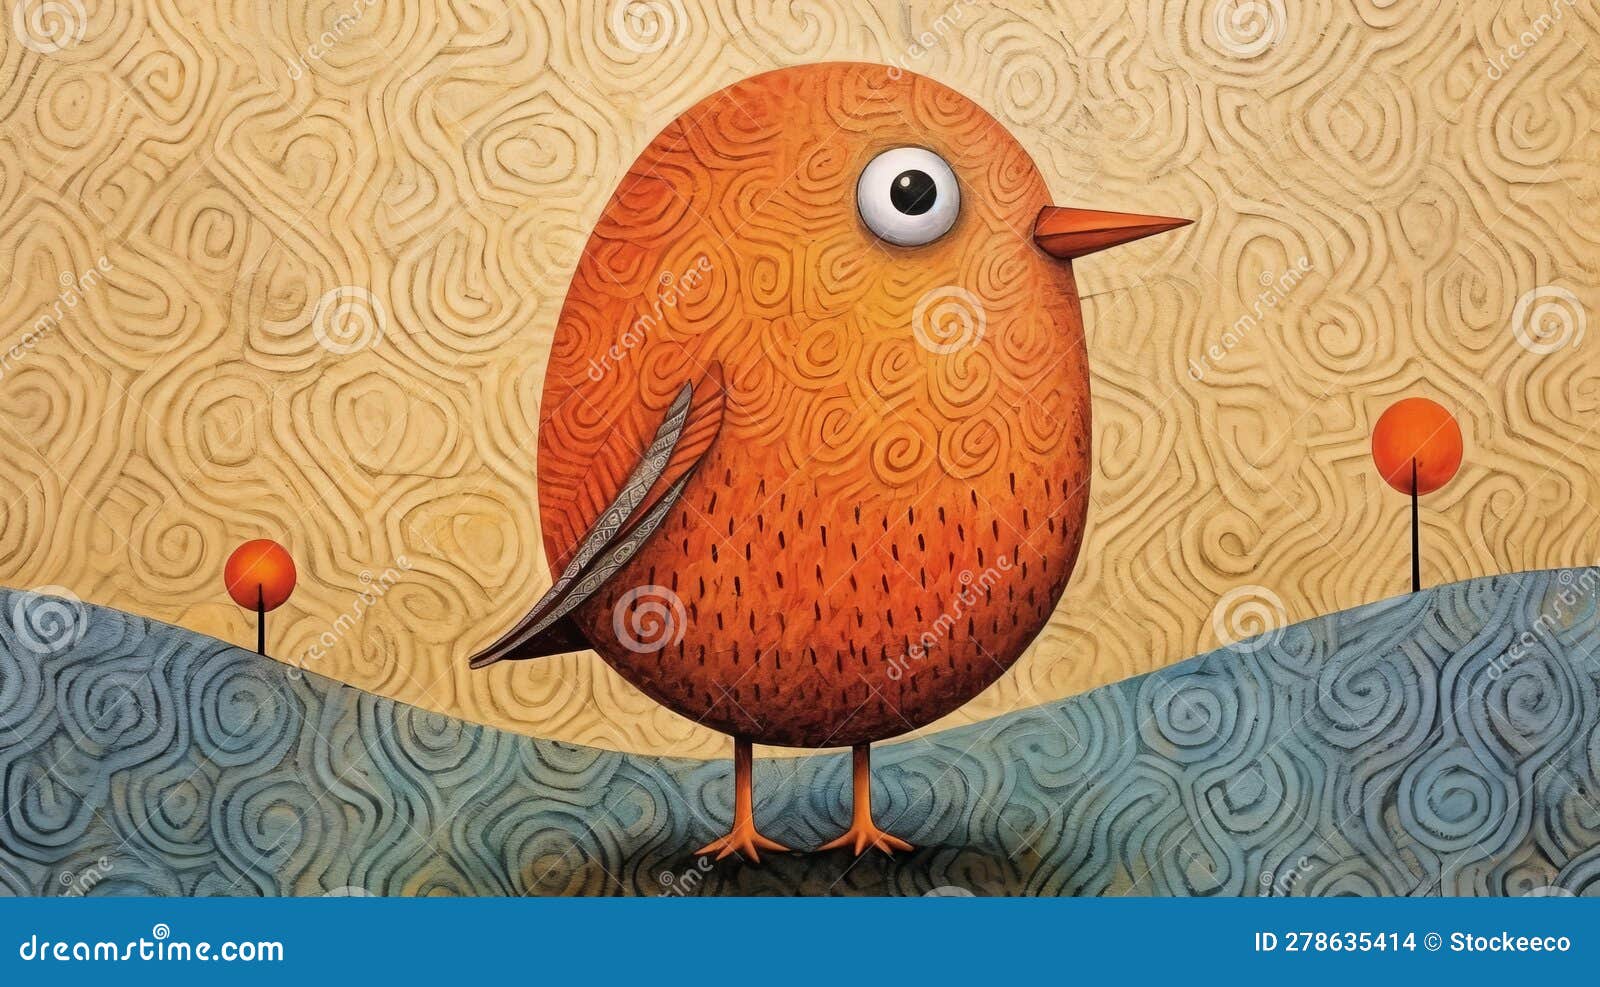 create lowell herrero bird-inspired artwork